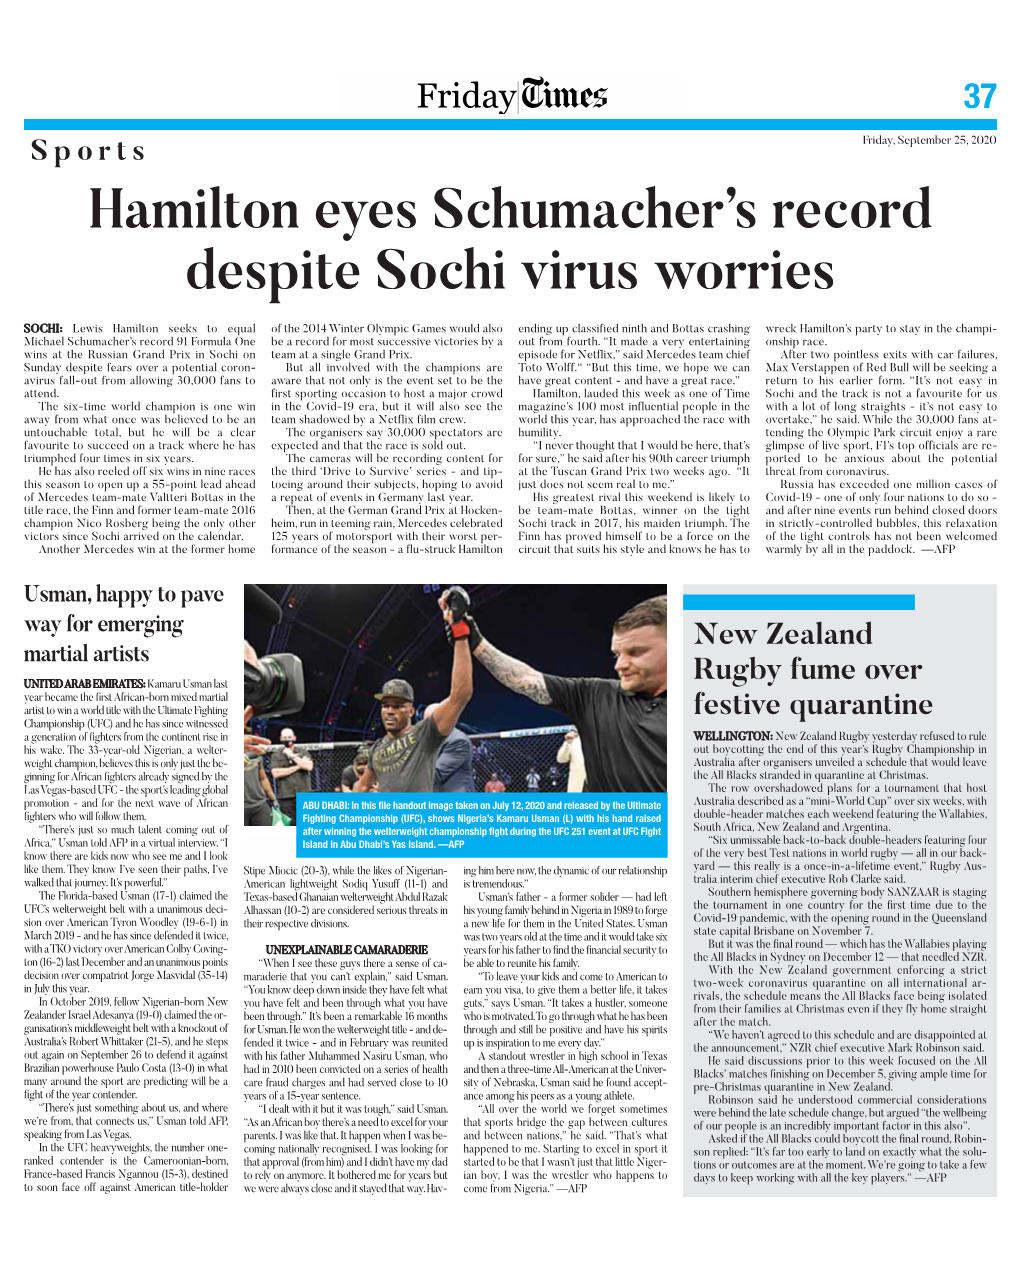 Hamilton Eyes Schumacher's Record Despite Sochi Virus Worries